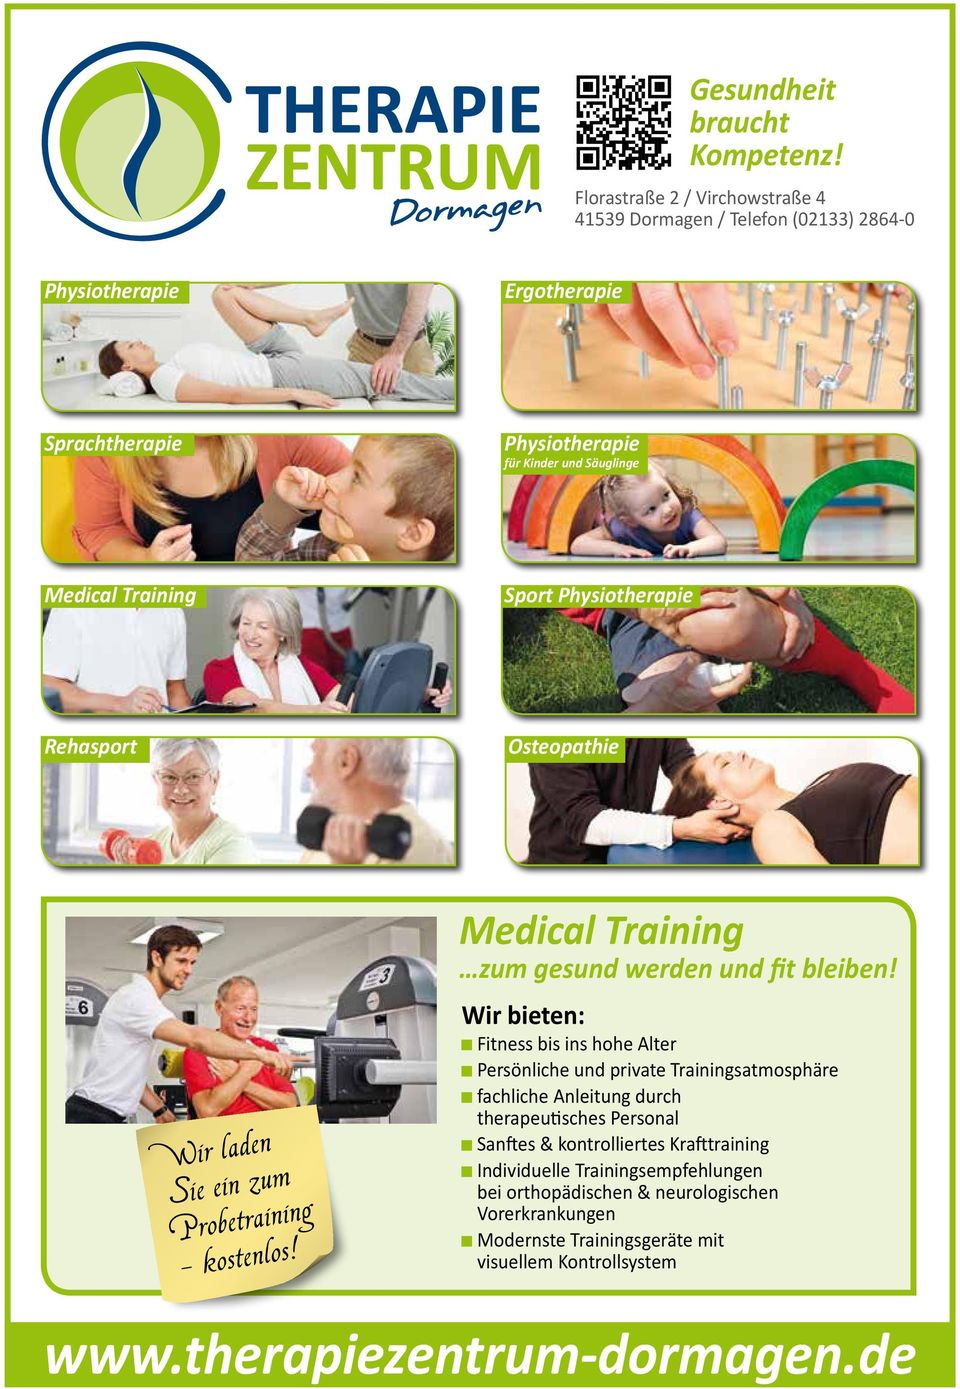 Sport Physiotherapie Rehasport Osteopathie Wir laden Sie ein zum Probetraining - kostenlos! Medical Training zum gesund werden und fit bleiben!